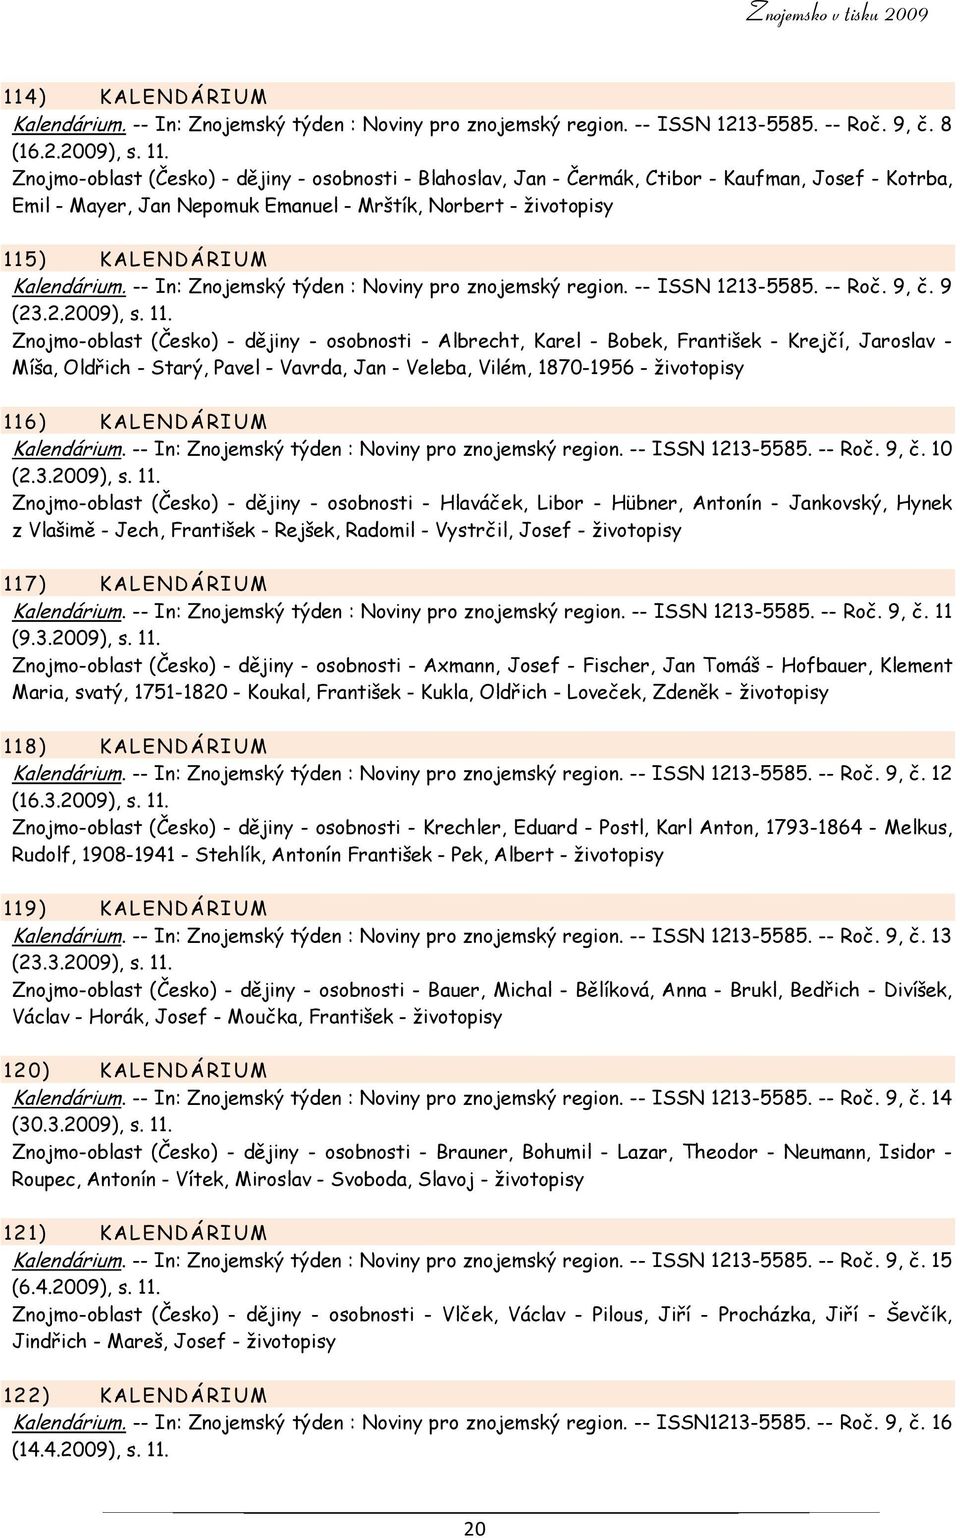 -- In: Znojemský týden : Noviny pro znojemský region. -- ISSN 1213-5585. -- Roč. 9, č. 9 (23.2.2009), s. 11.